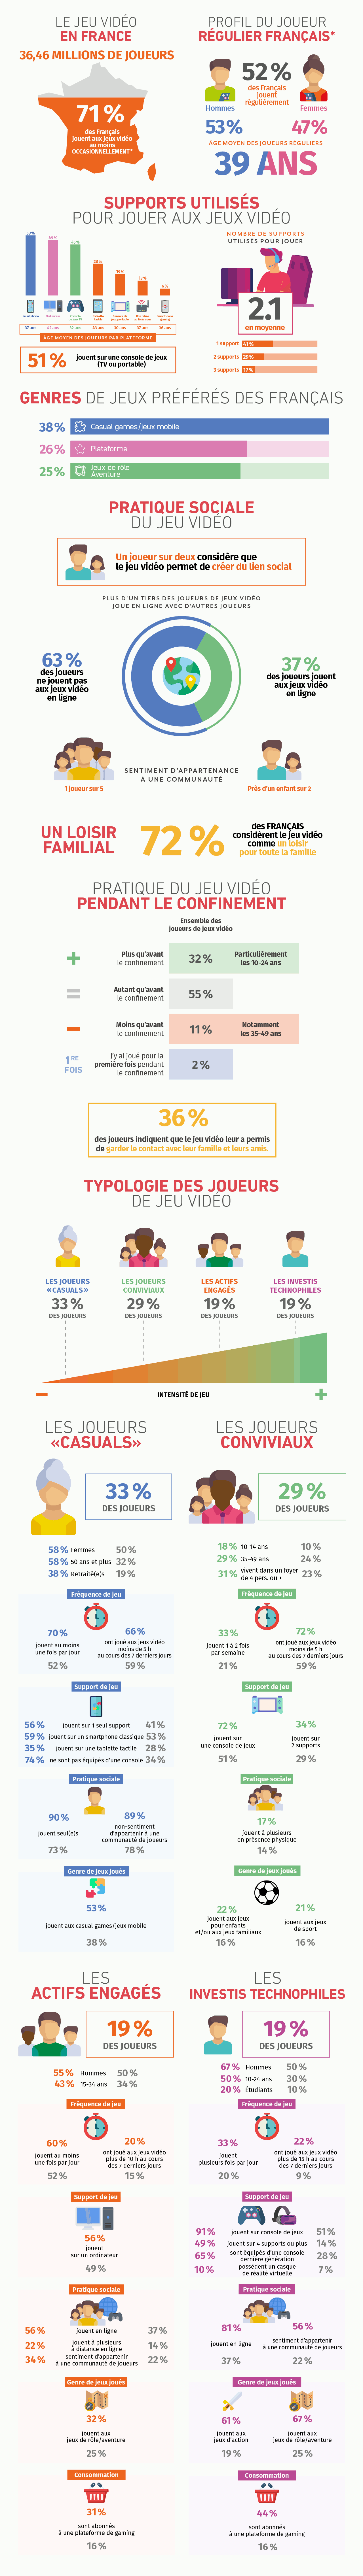 Infographie "Les français et le jeu vidéo" en 2020